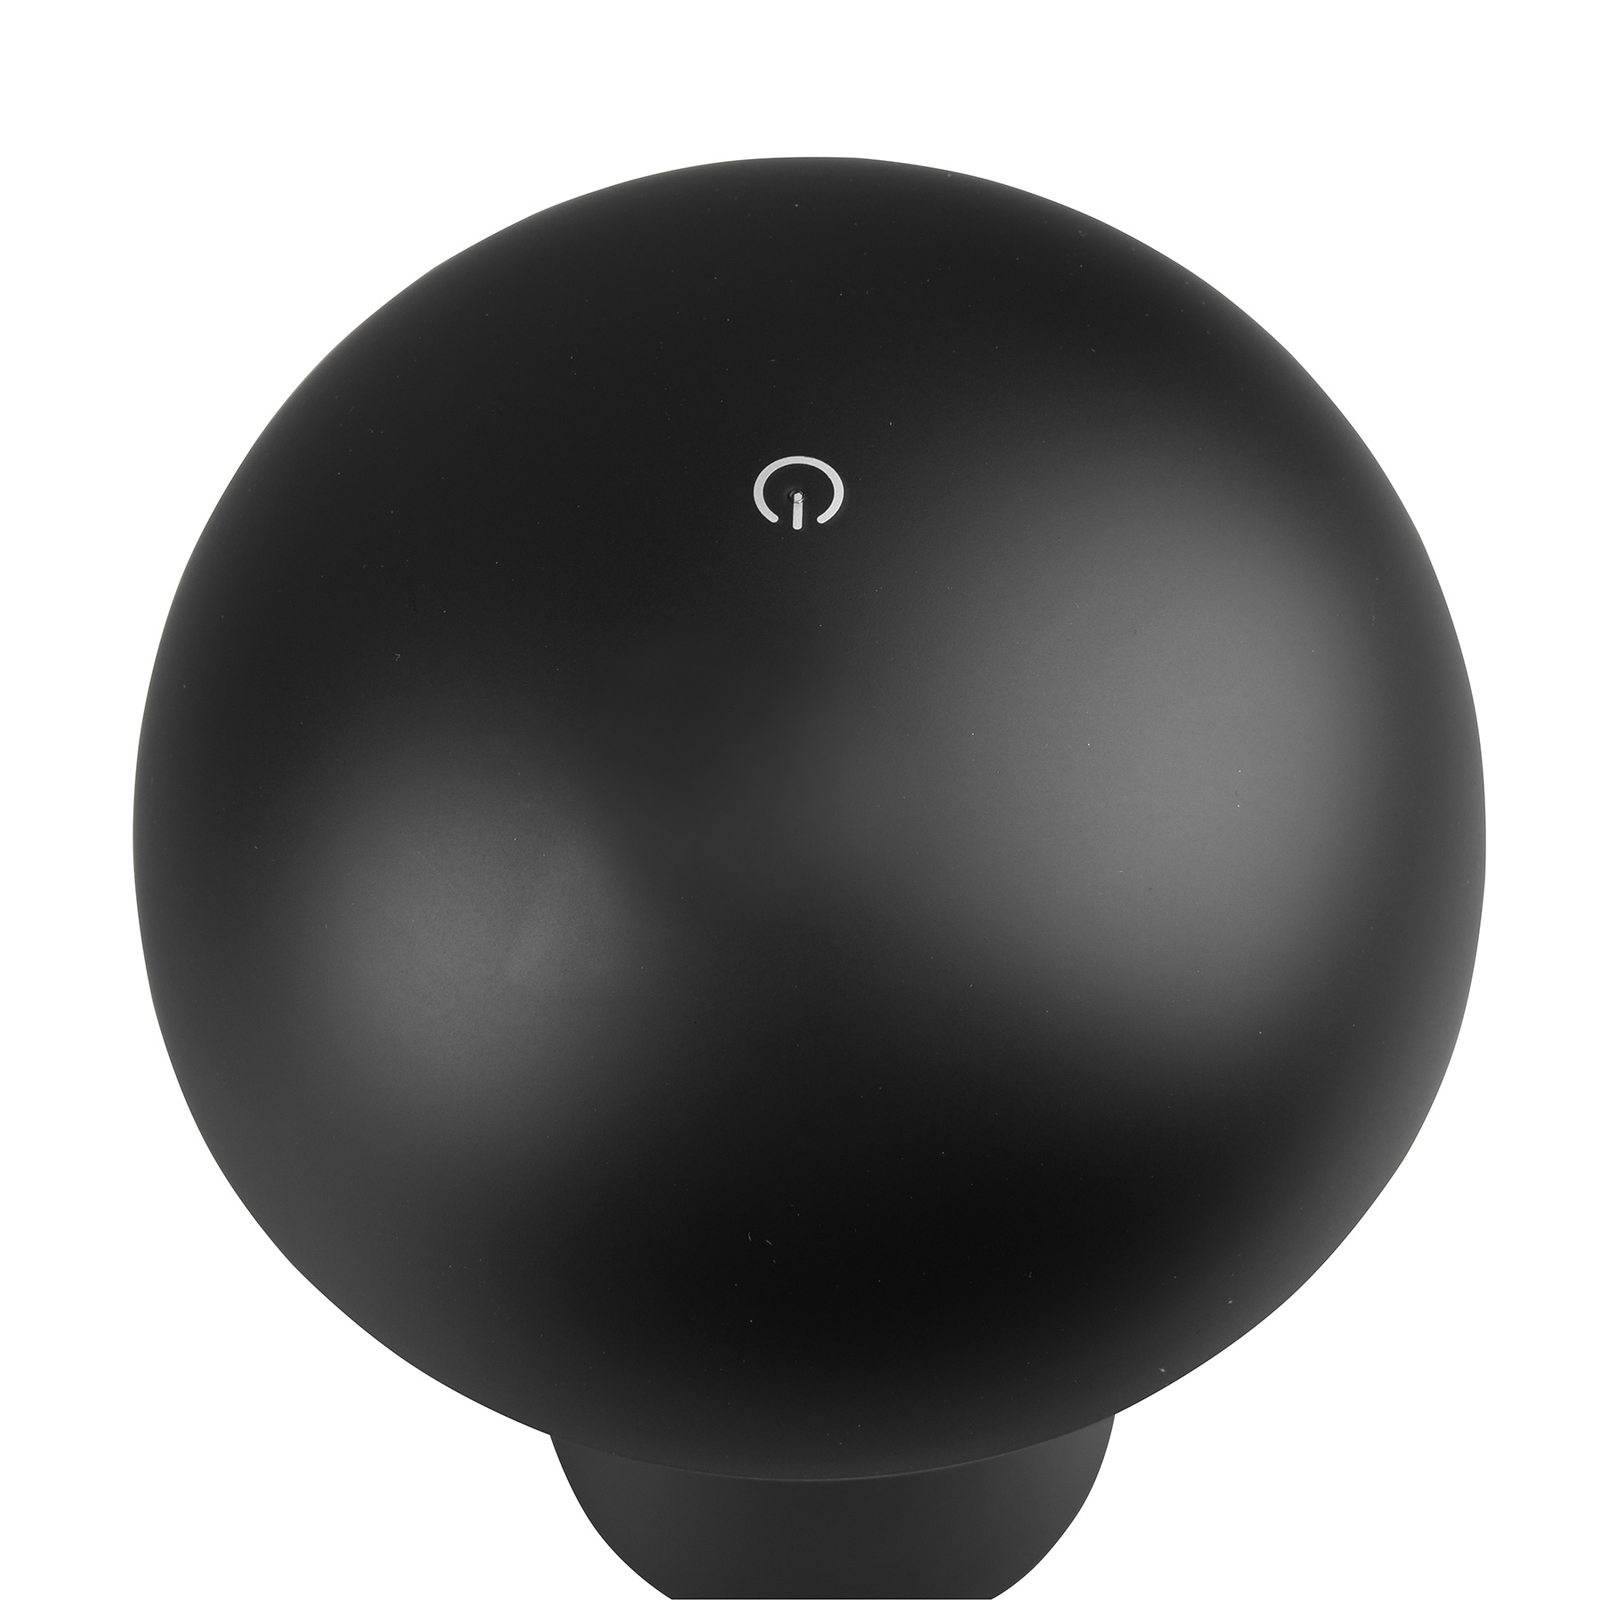 LED stolní lampa Lennon IP44 baterie dim černá